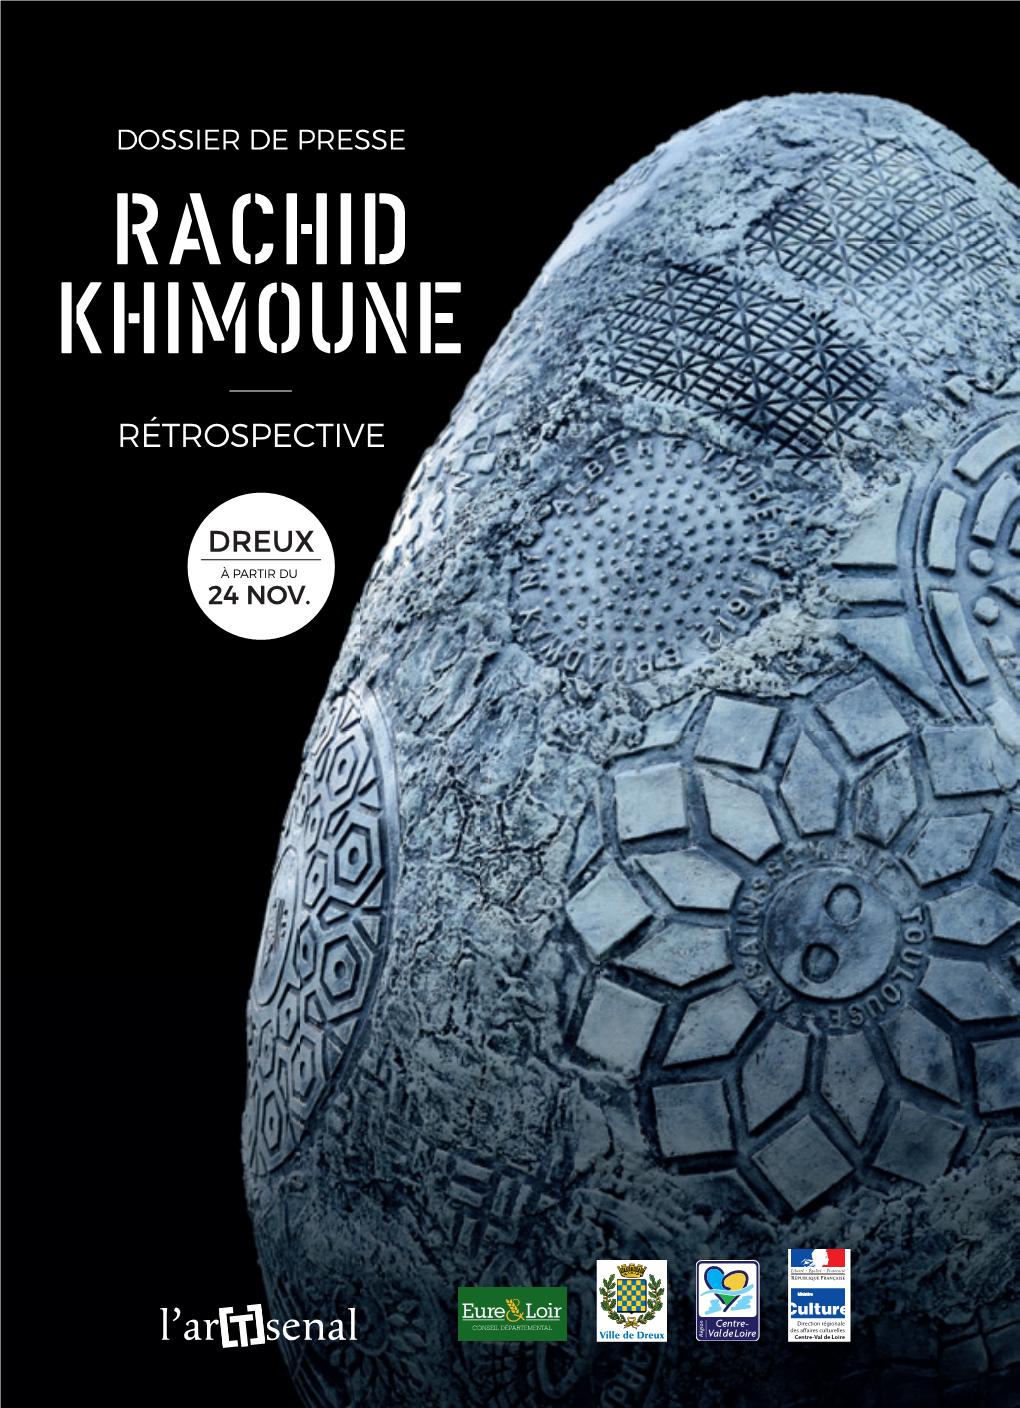 Rachid Khimoune